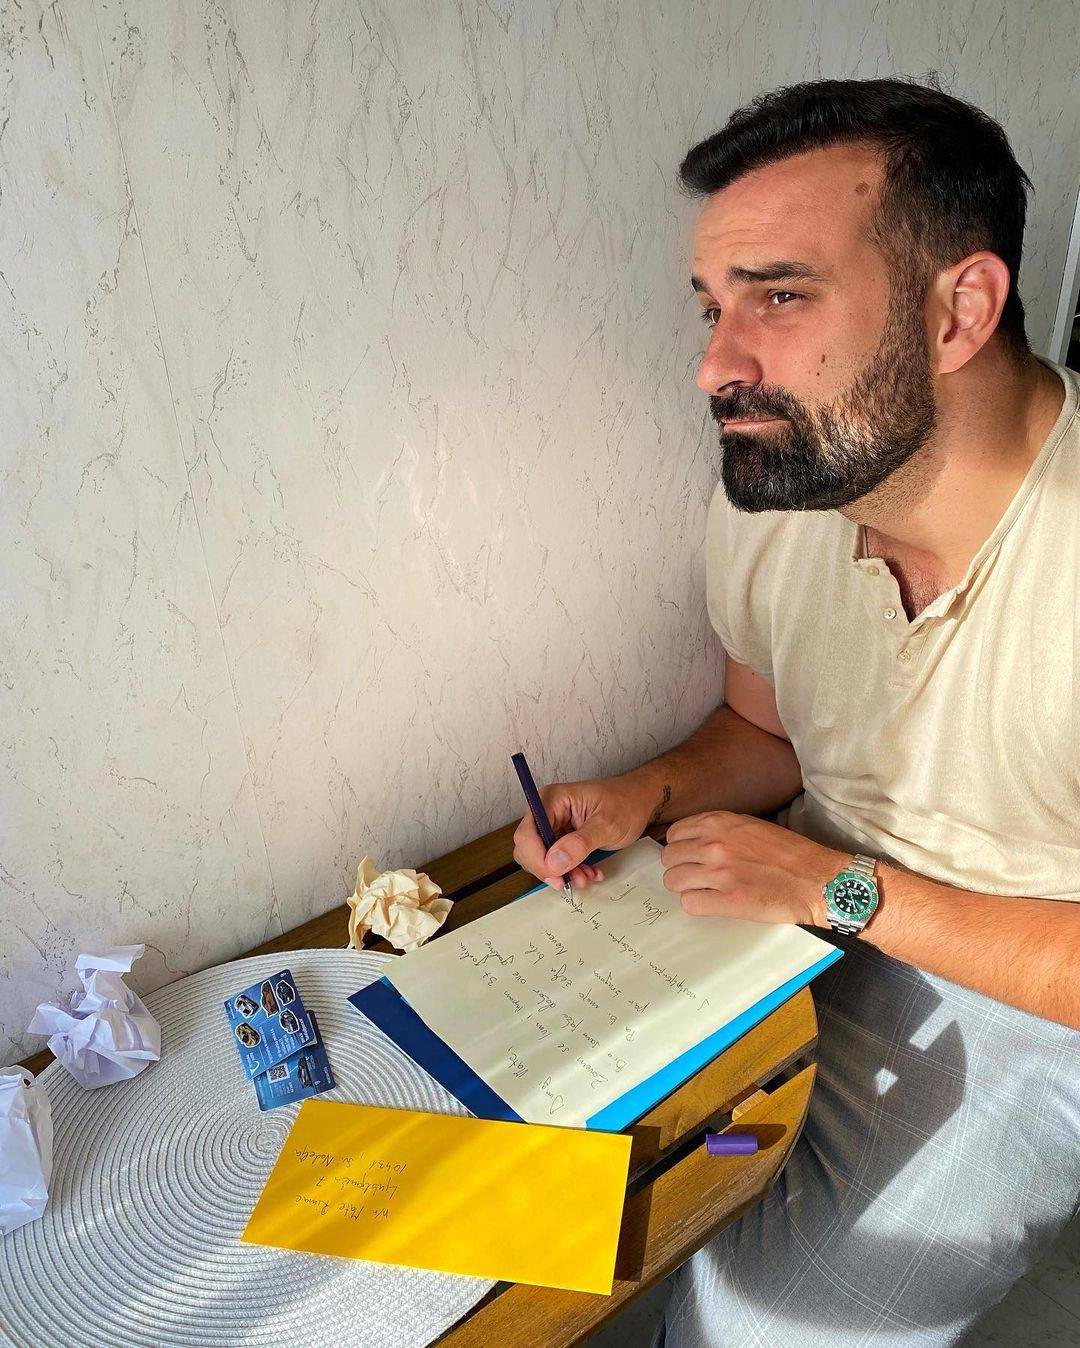 Ivan Šarić napisao pismo Rimcu:  'Moja želja bi bila par krugova u Neveri. Čekam tvoj odgovor'